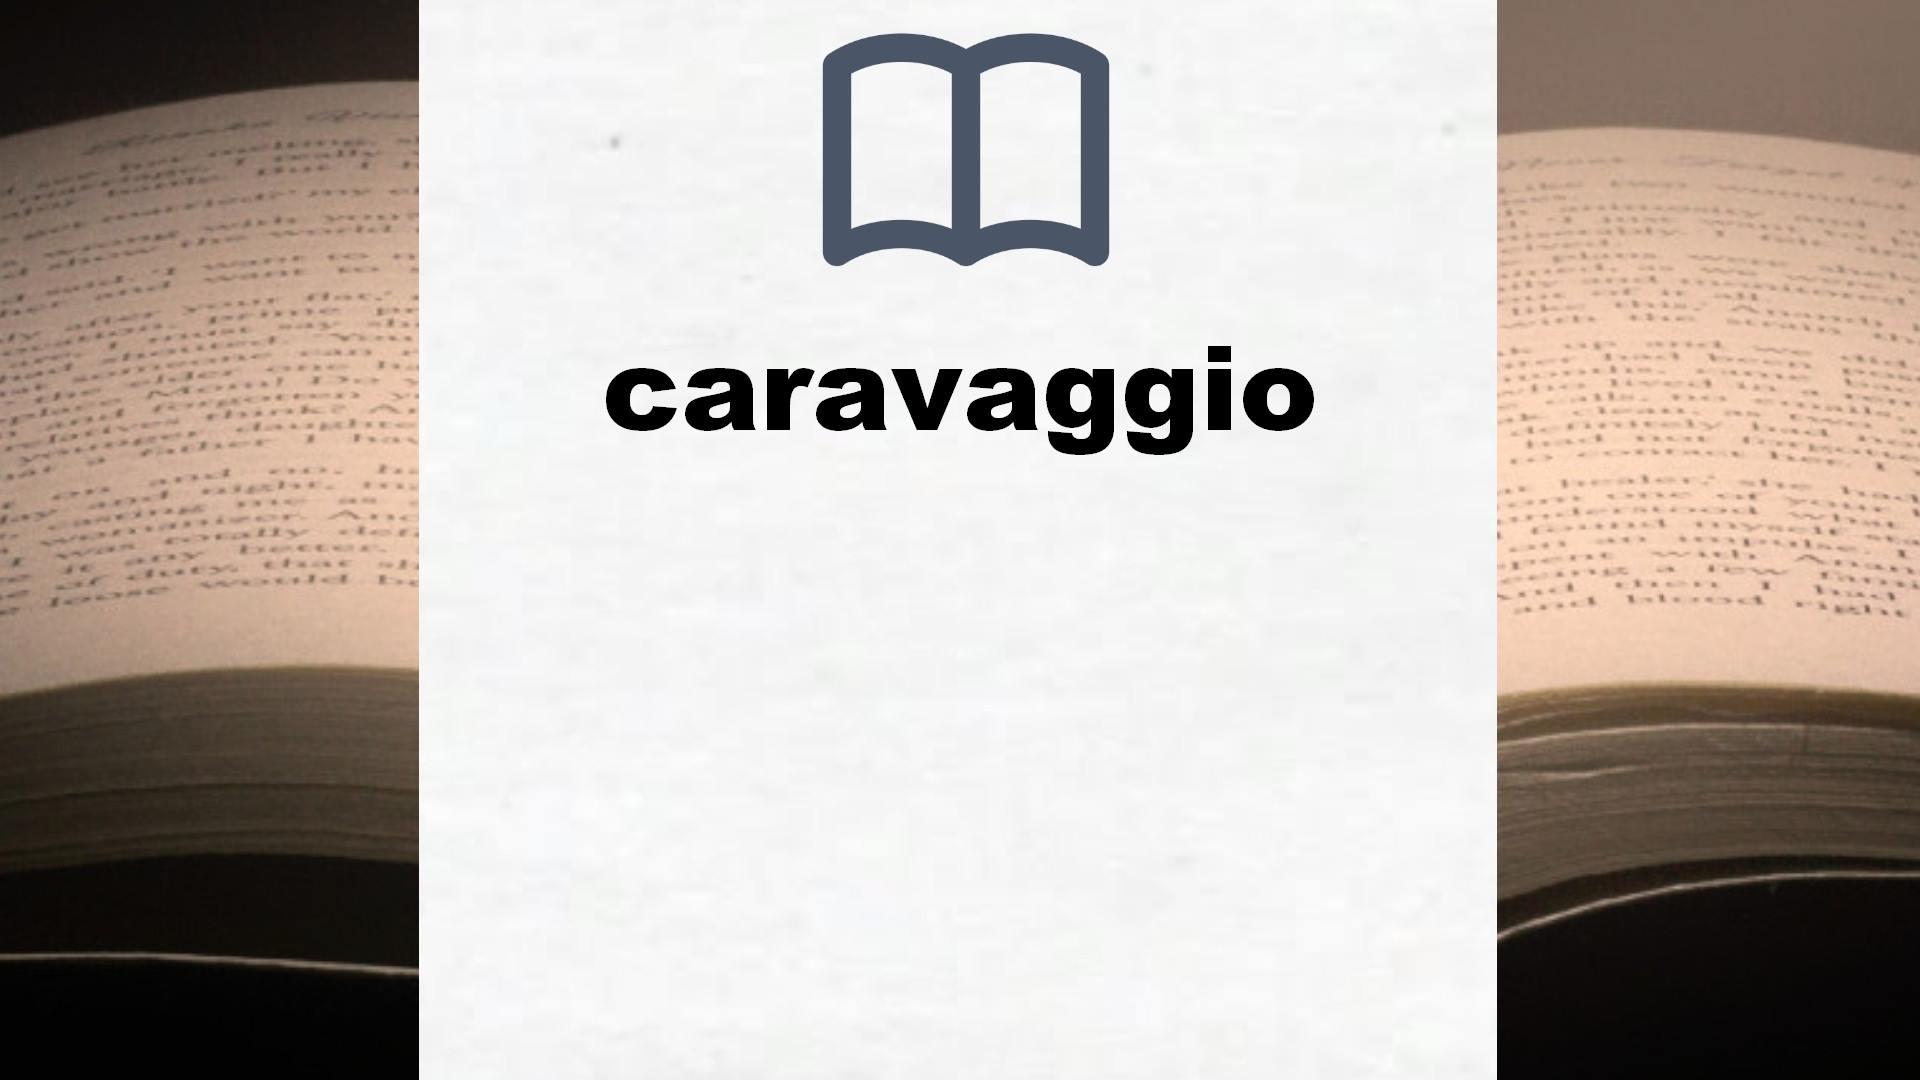 Libros sobre caravaggio